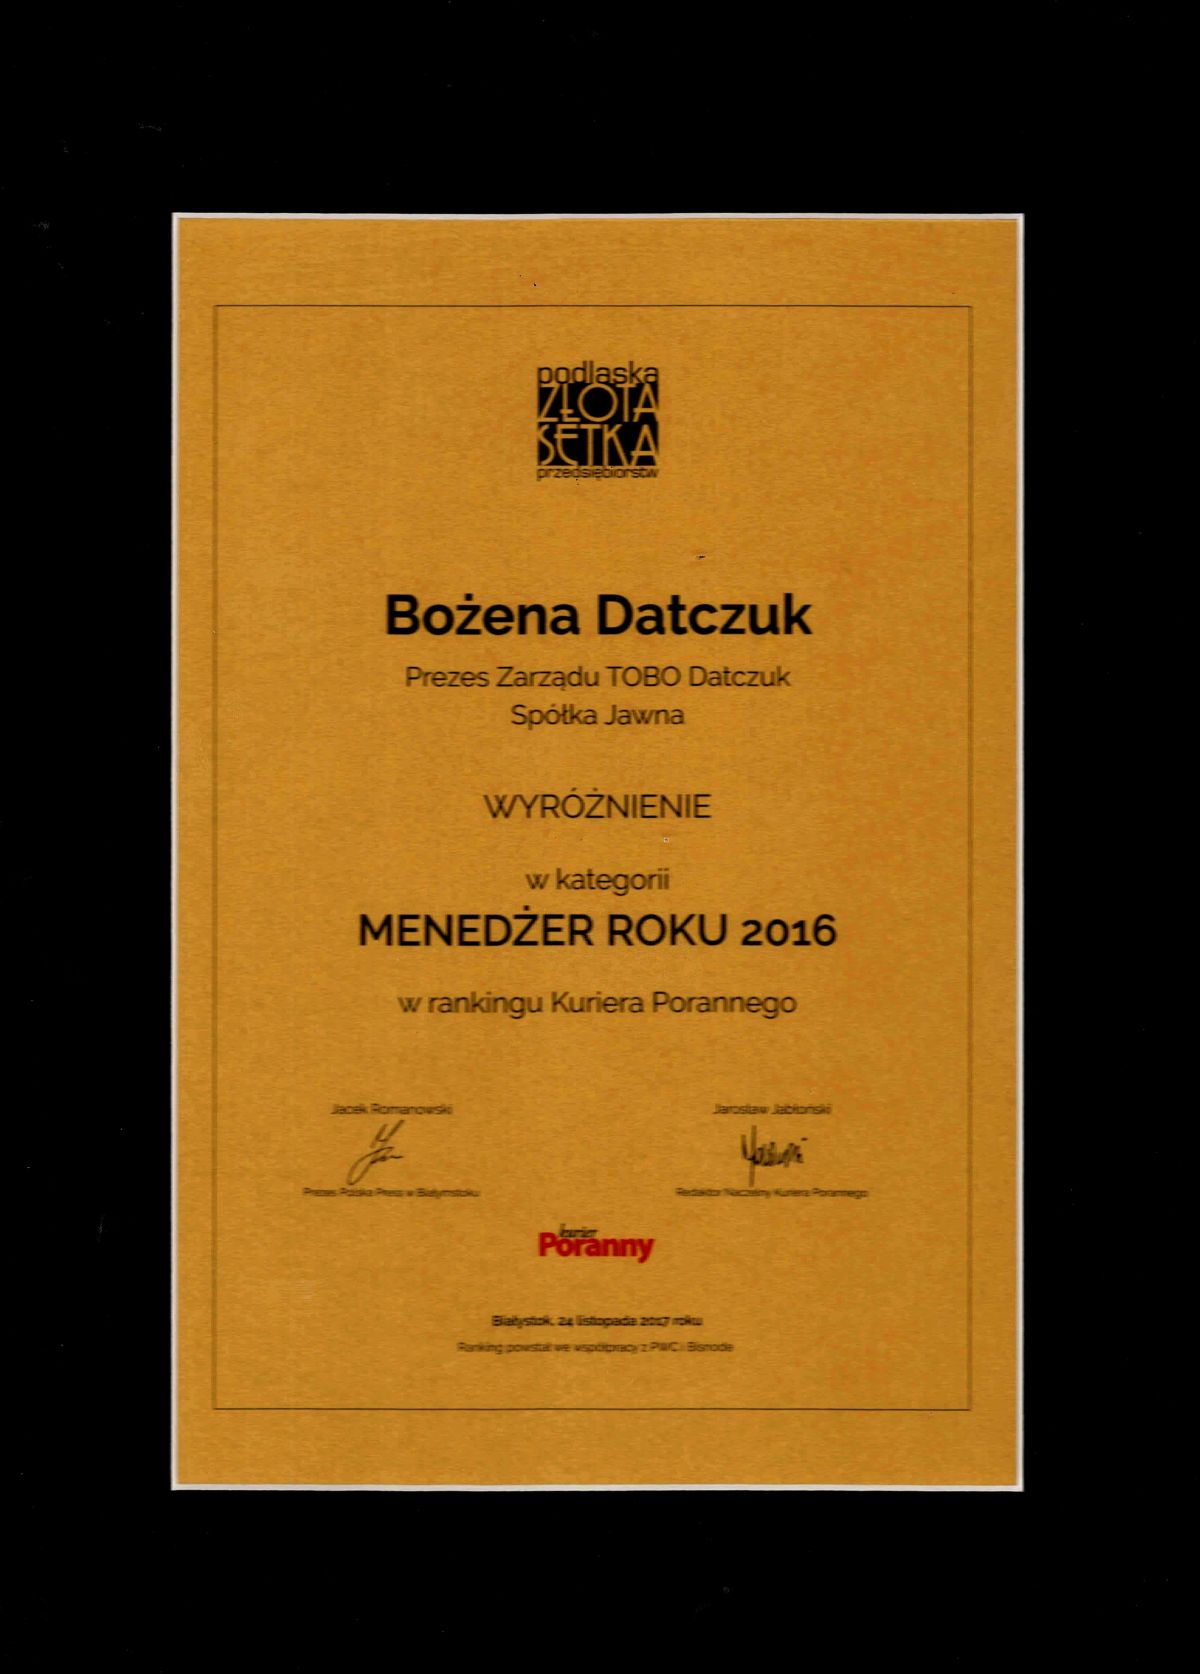 Bozena-Datczuk-wyroznienie-menedzer-roku-2016 -podlaska-zlota-setka-przedsiebiorcow.jpg